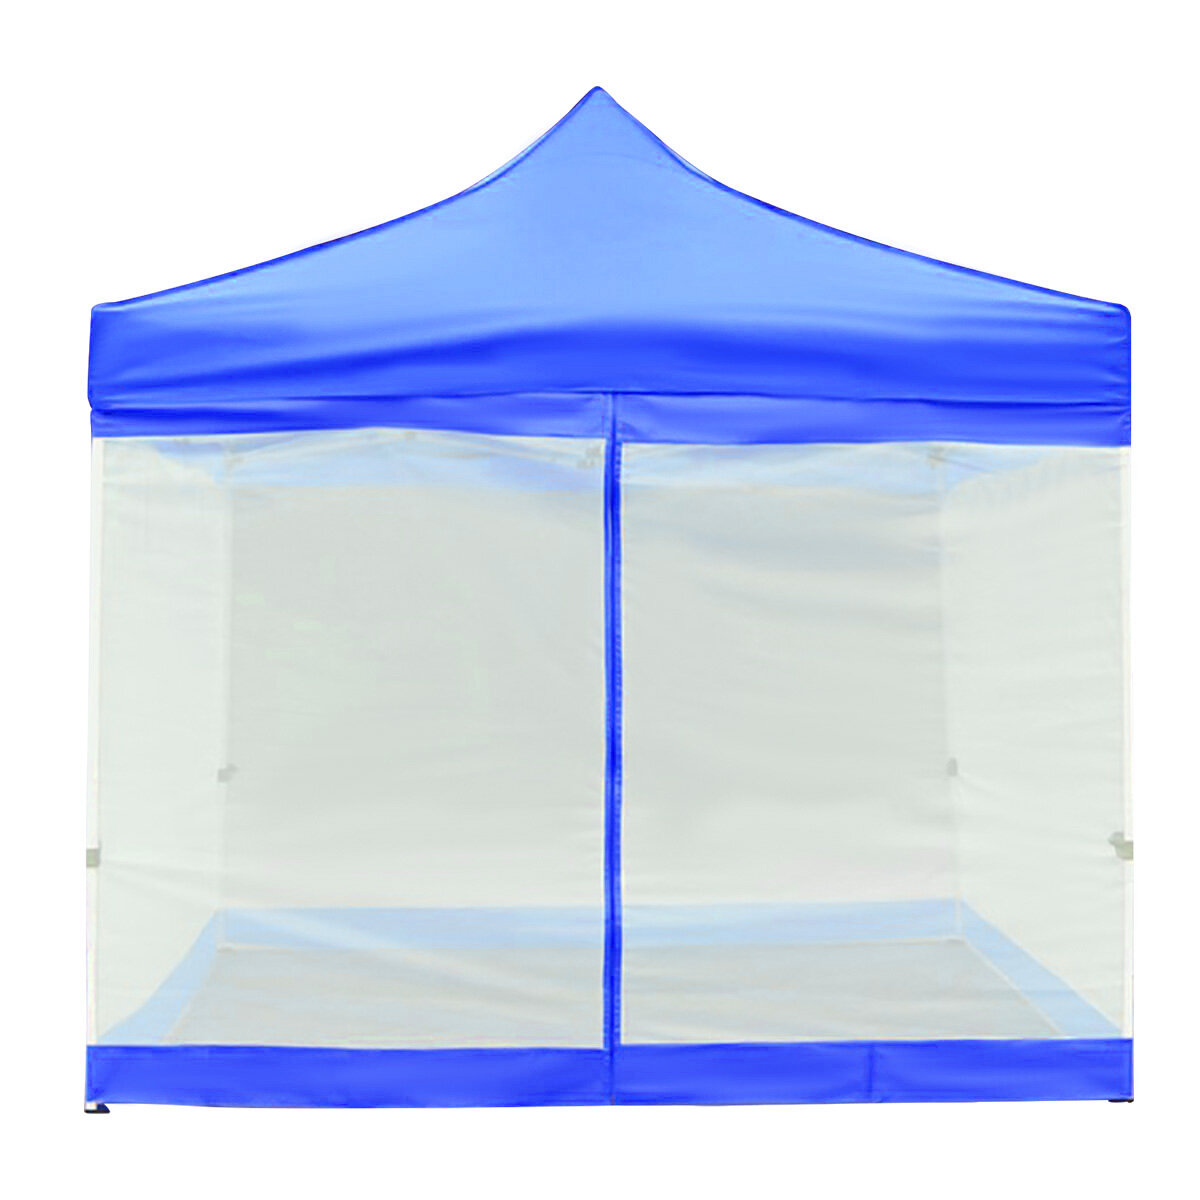 خيمة التخييم في الشاطئ الخارجي بمقاس 9.8x9.8 قدم مع شبكة حشرات لصد الحشرات